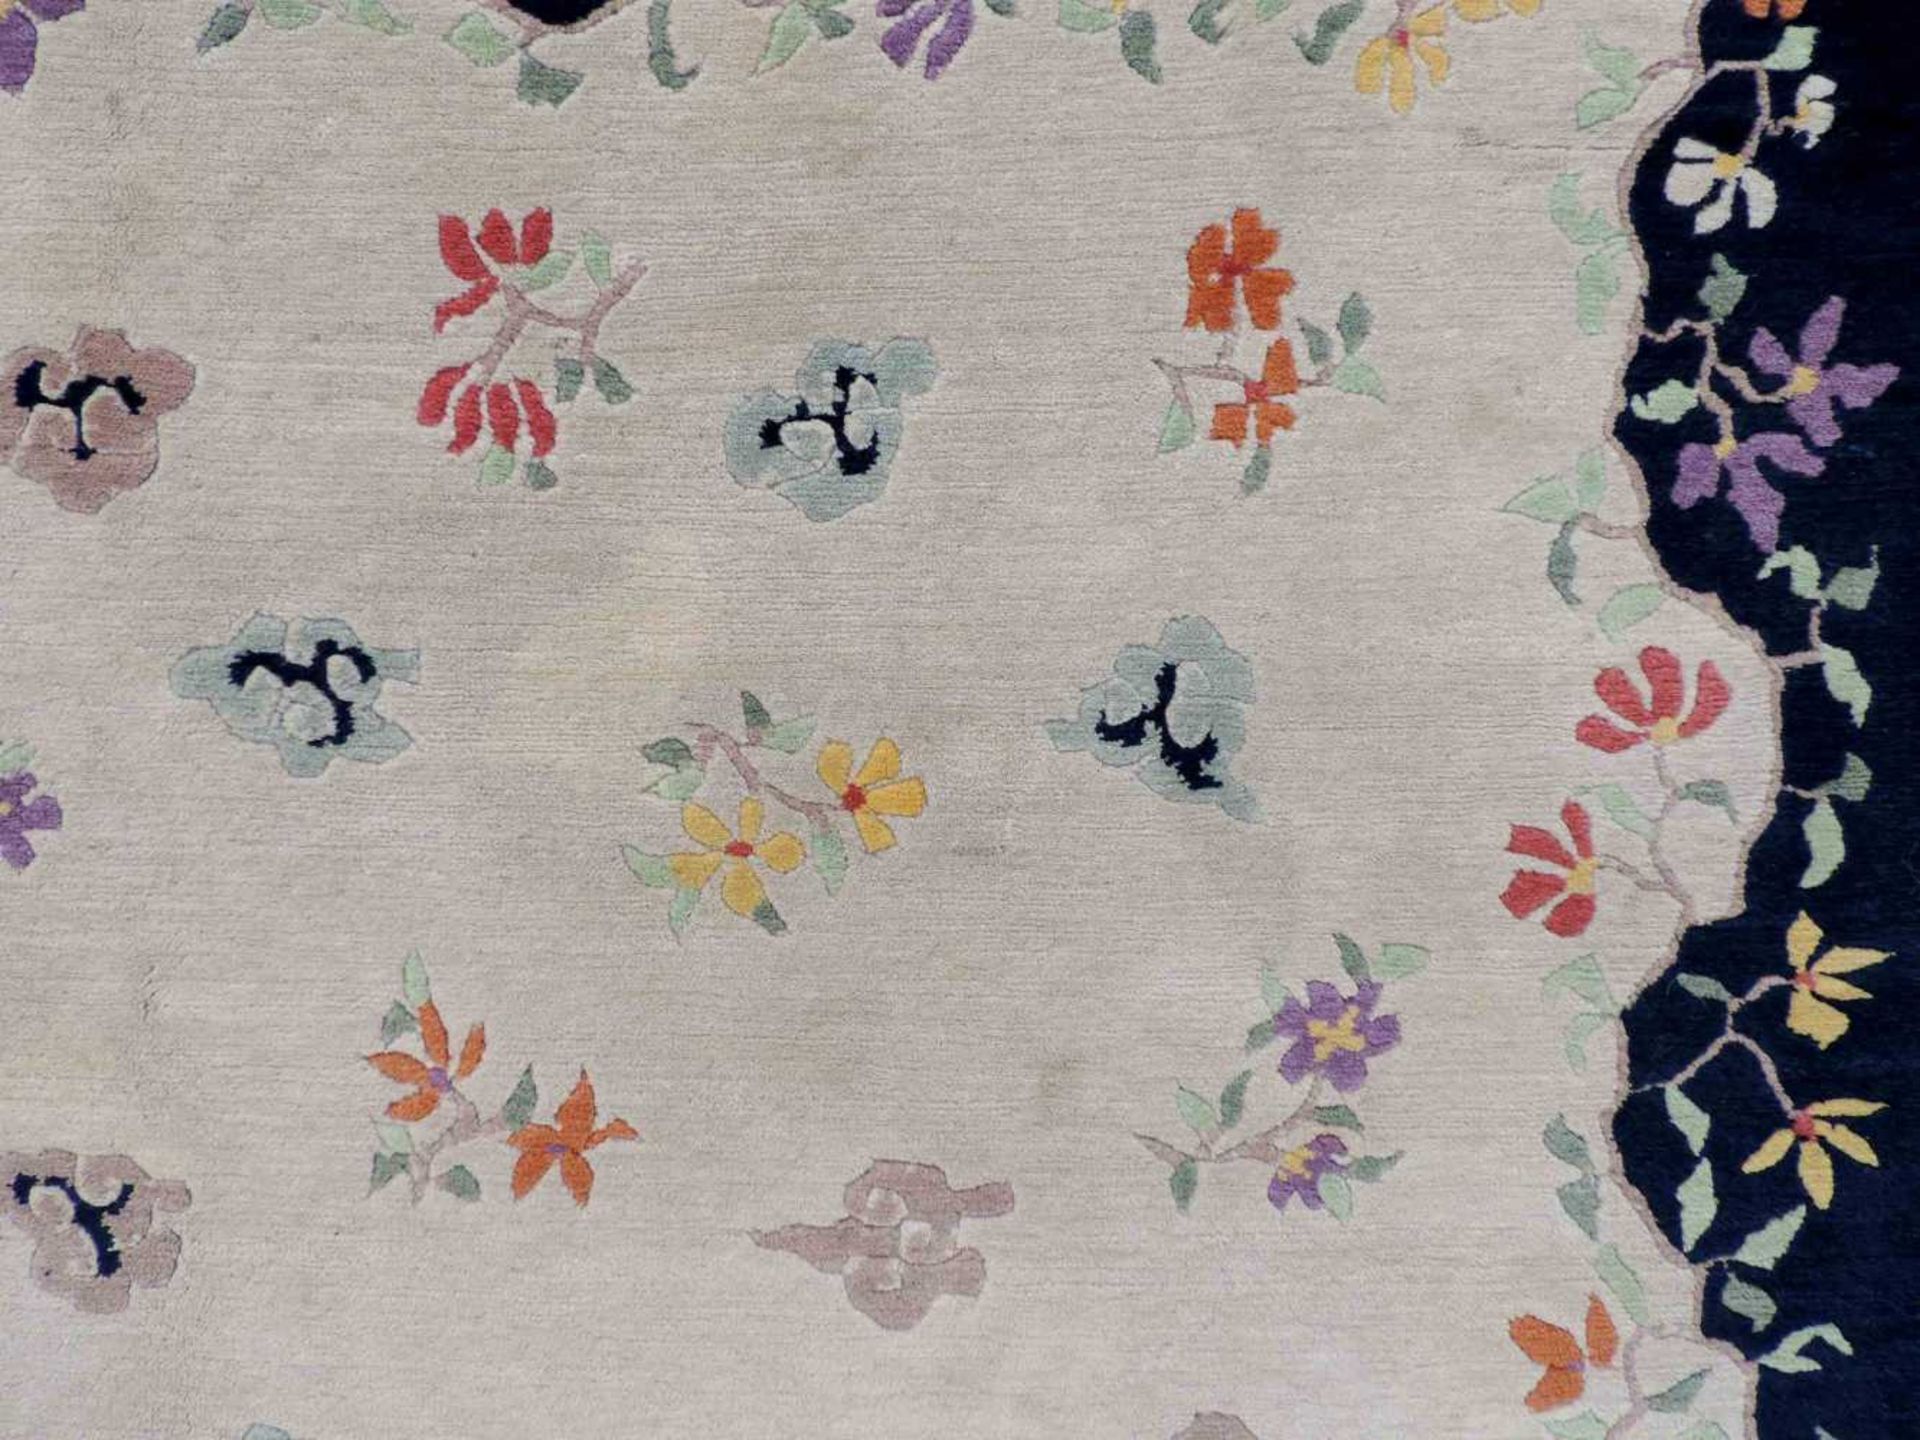 Blütenteppich China. 245 cm x 167 cm. Handgeknüpft, Wolle auf Baumwolle. Blossoms carpet China. - Bild 10 aus 12